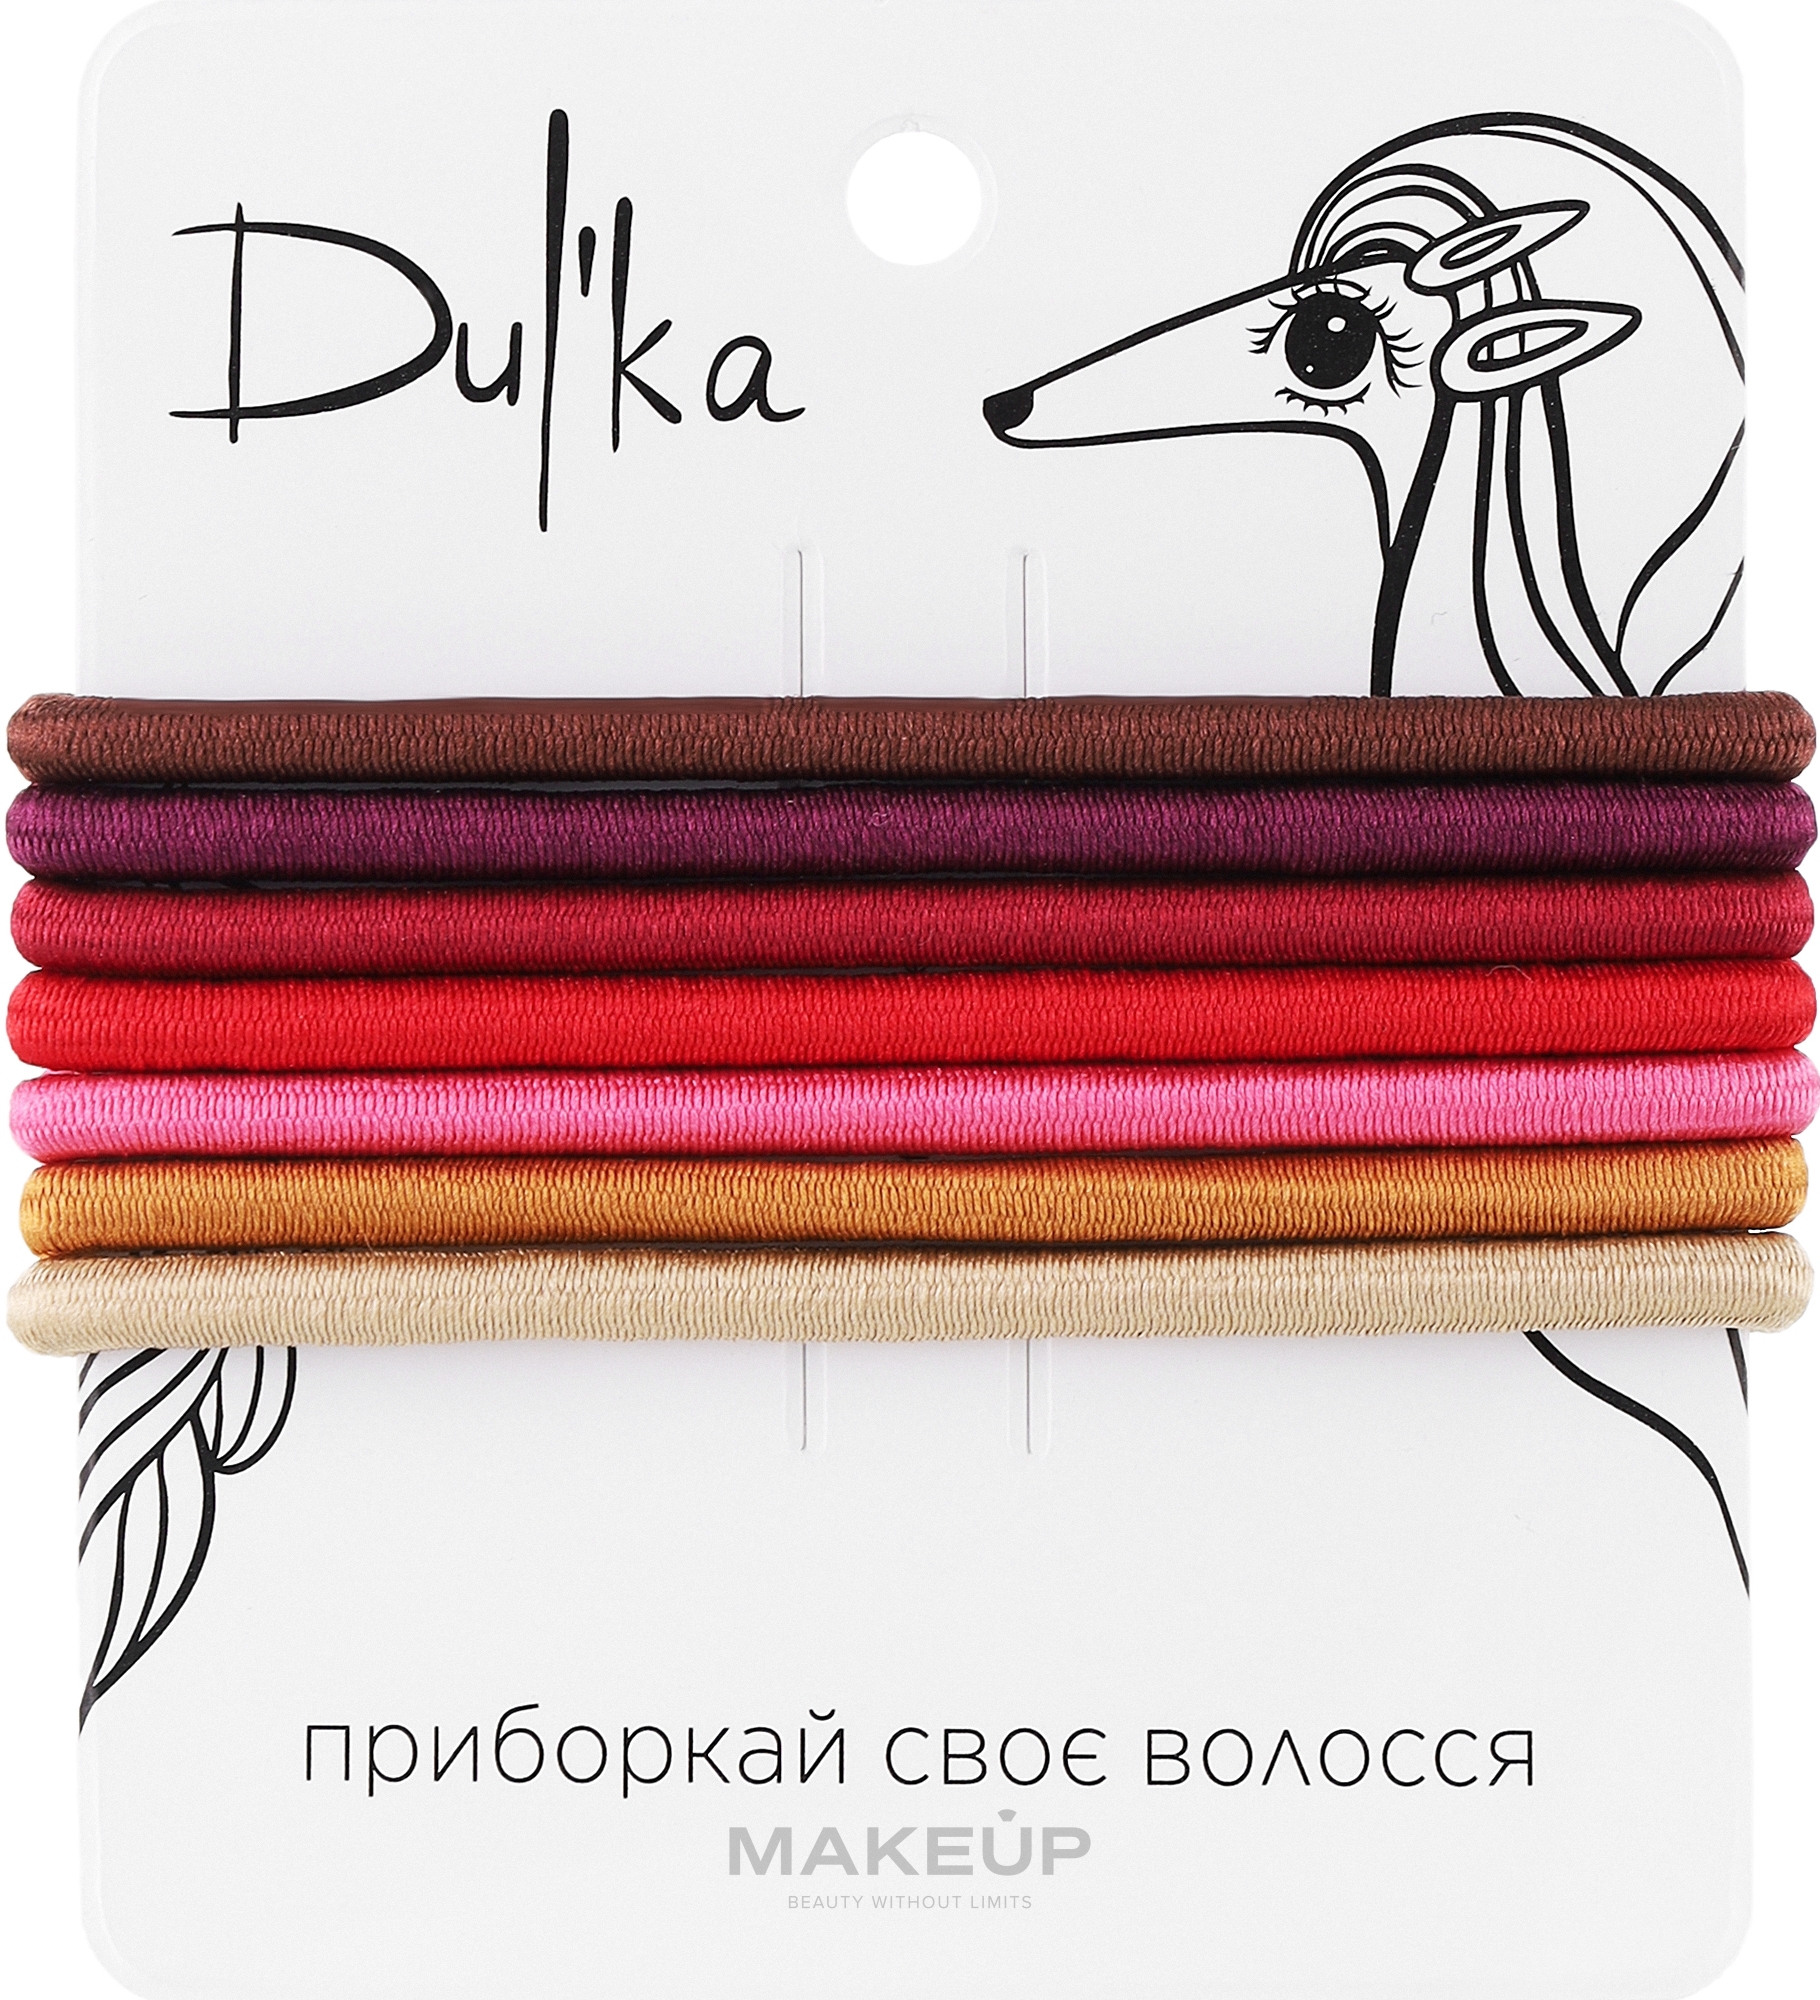 Набор разноцветных резинок для волос UH717706, 7 шт - Dulka  — фото 7шт